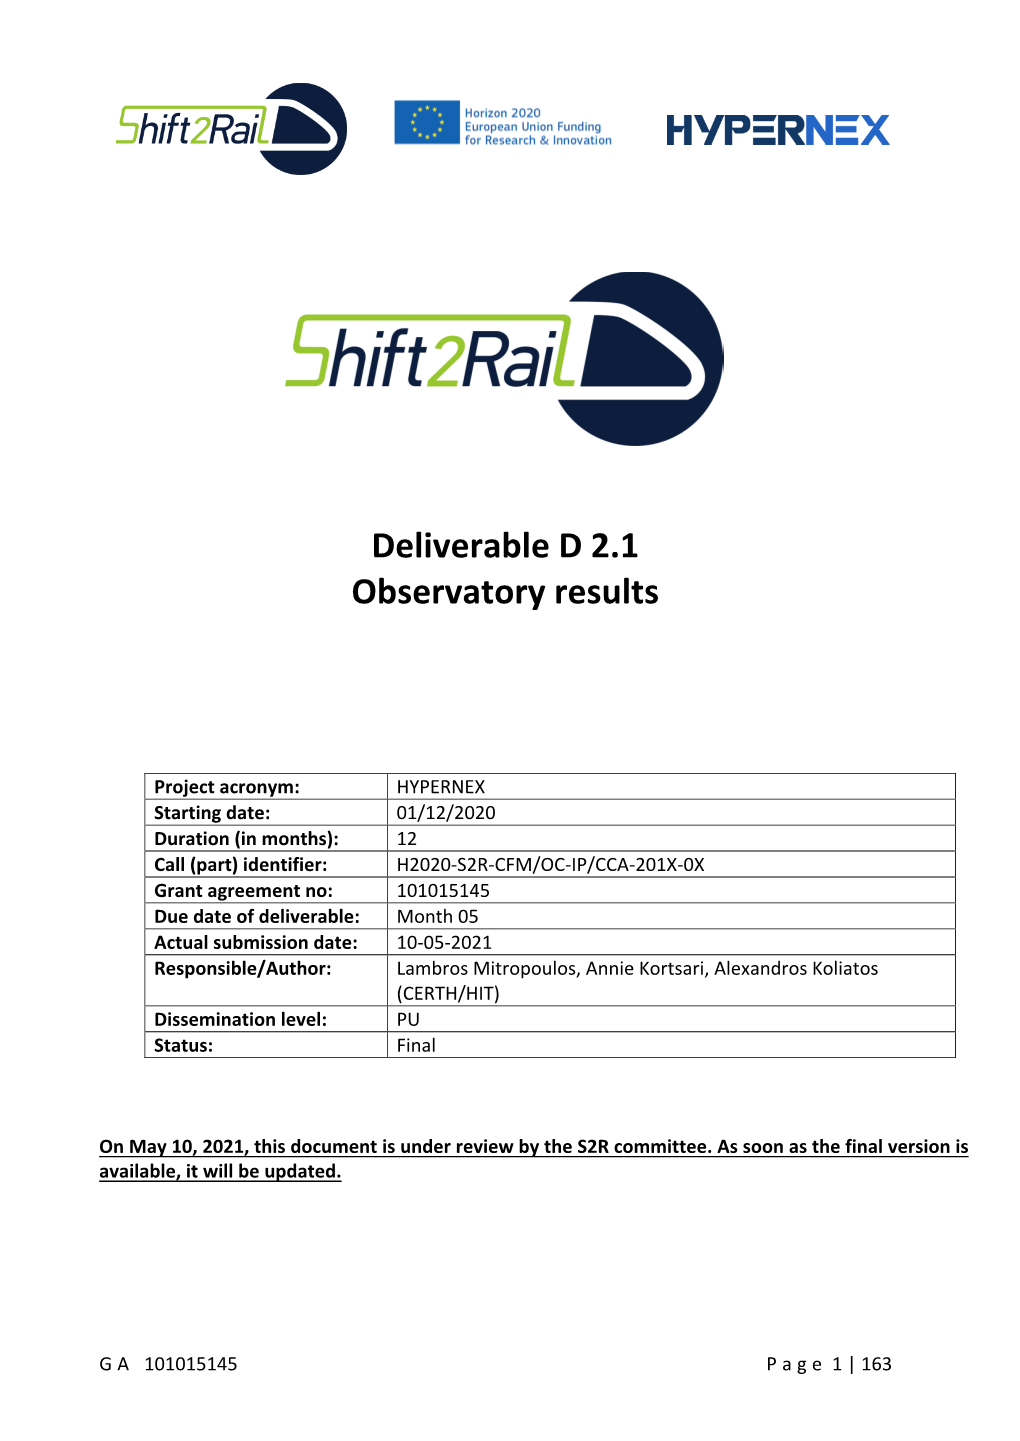 Deliverable D 2.1 Observatory Results